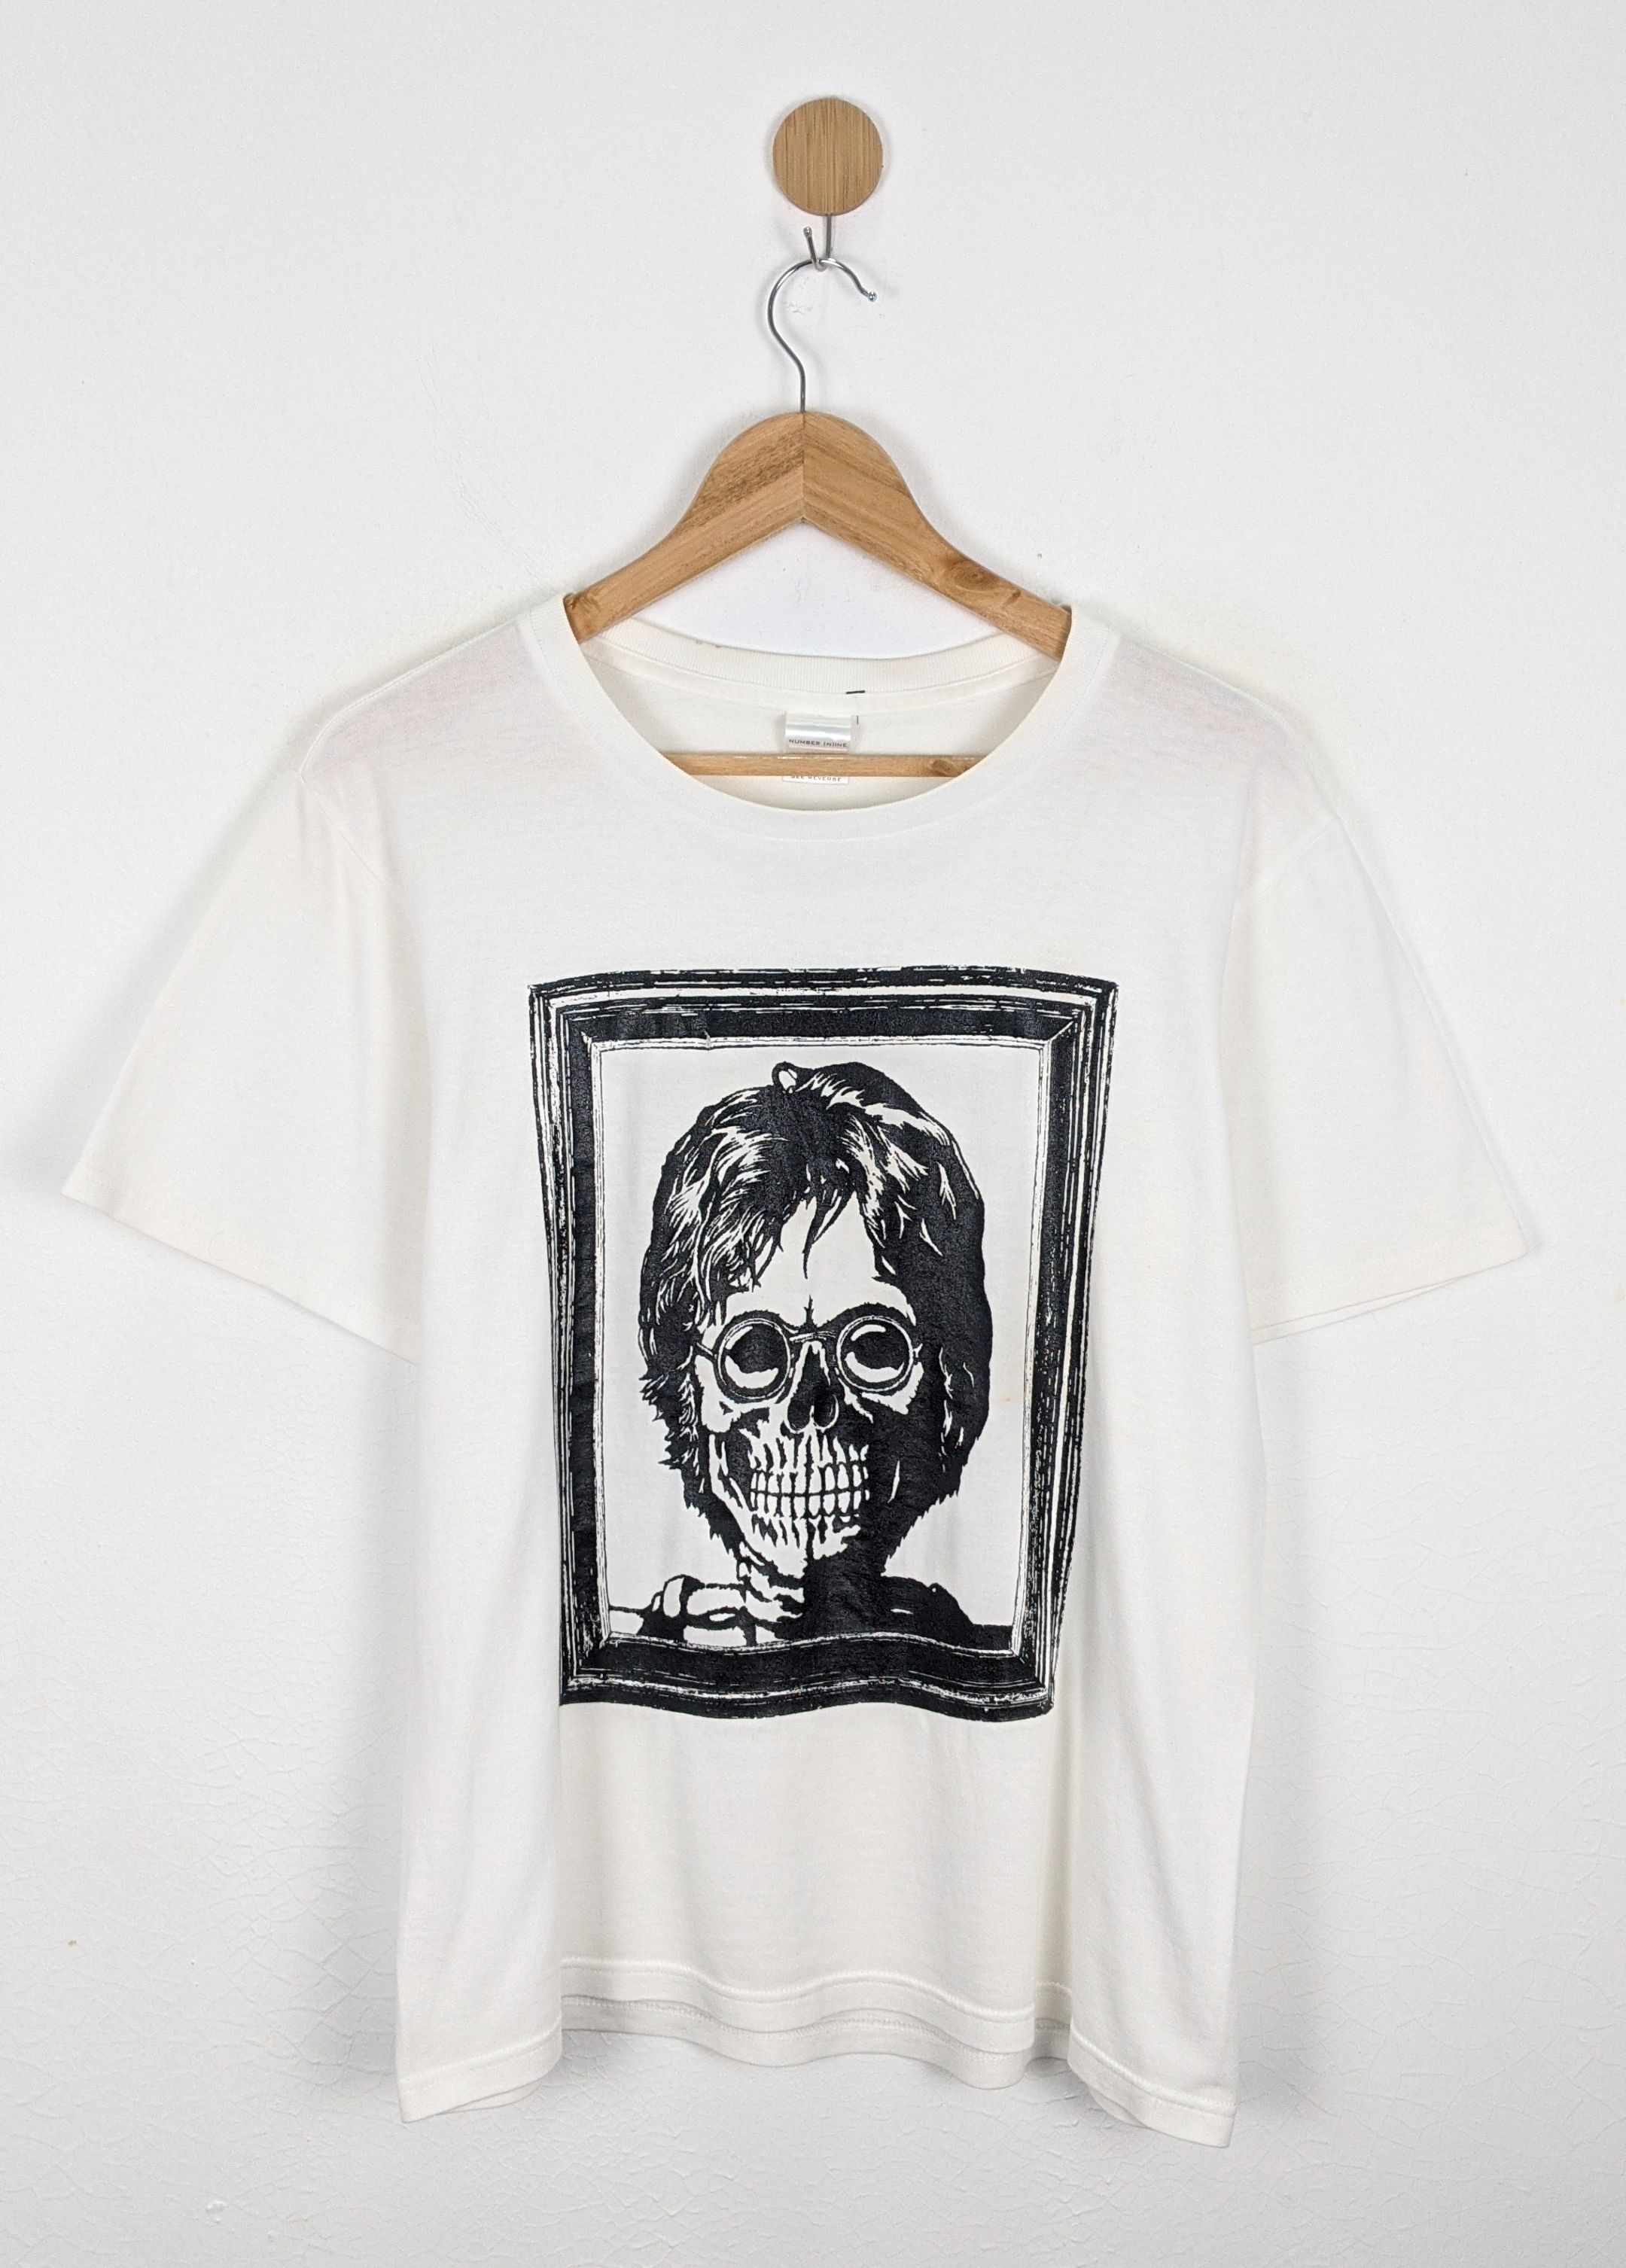 Number Nine John Lennon Skull Bones shirt - 1